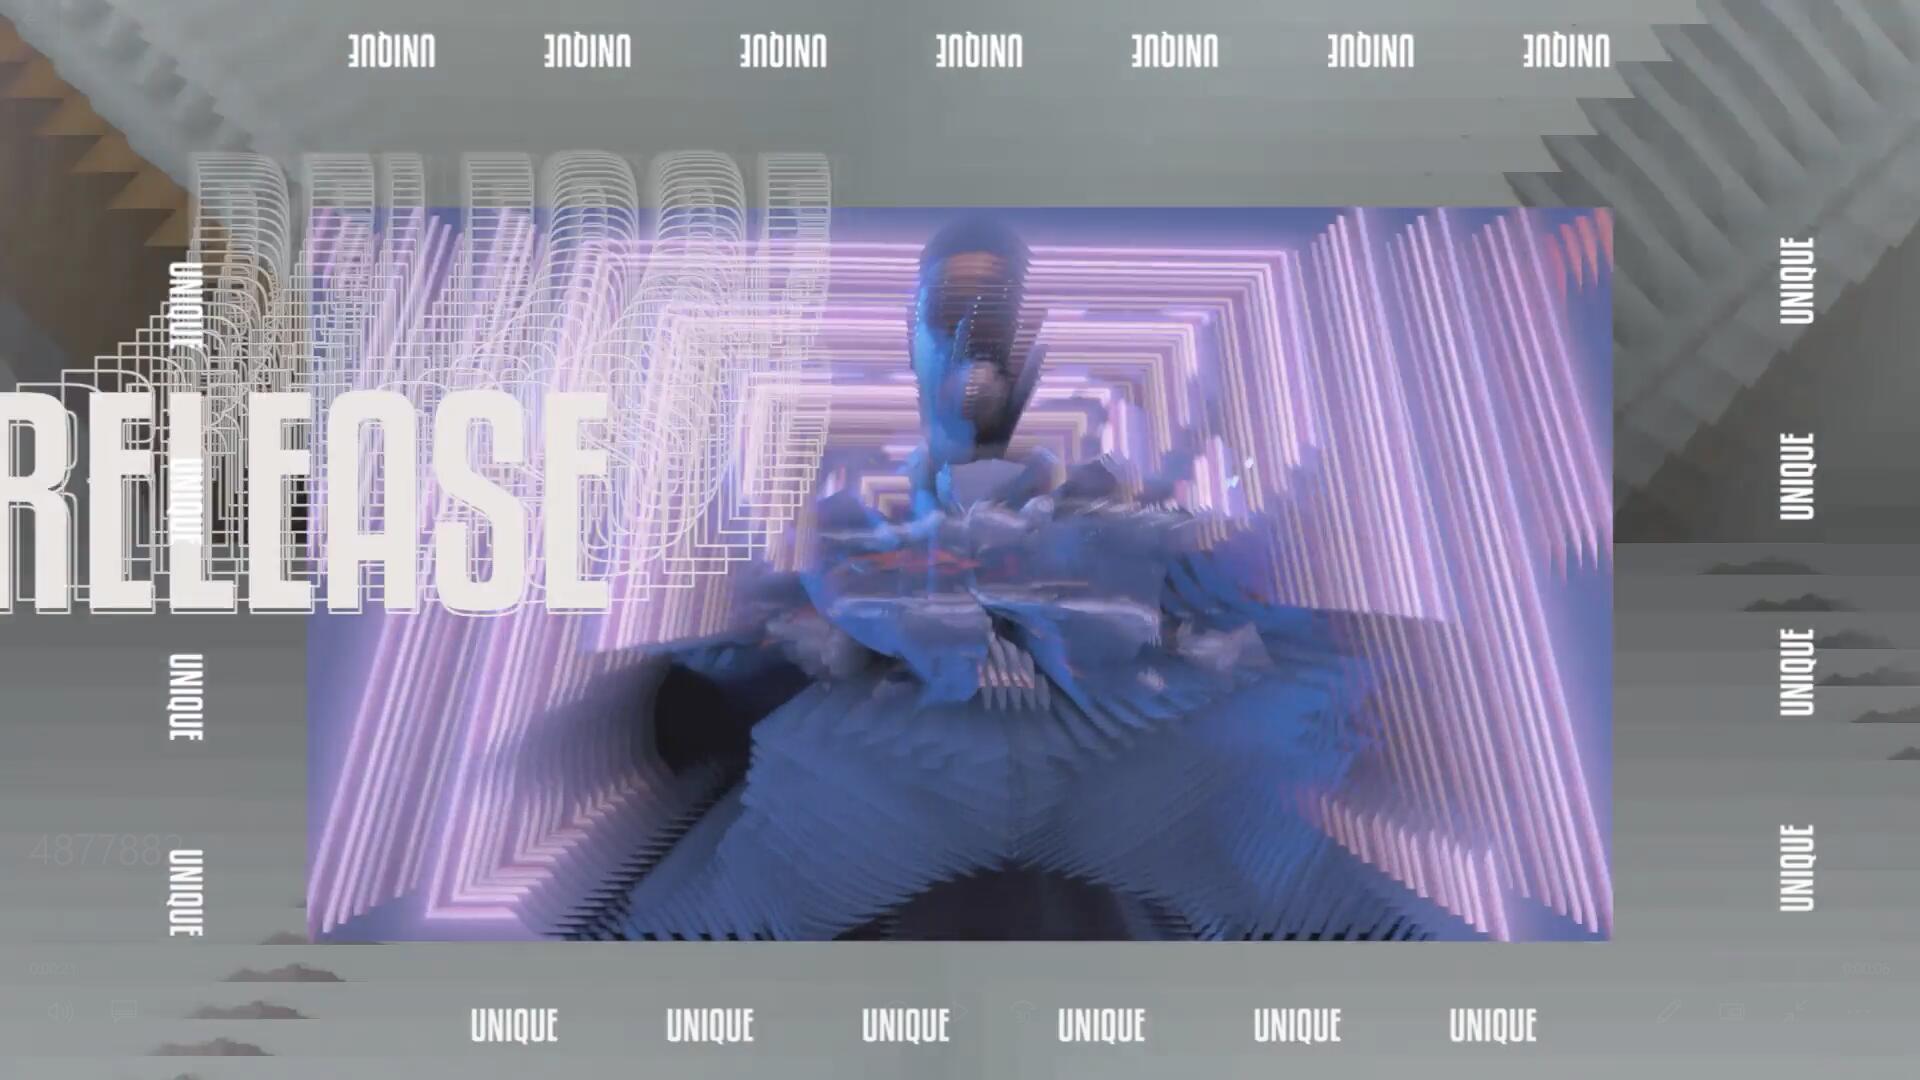 FCPX插件：90年代抽象失真动态时尚垃圾摇滚音乐视频街头排版效果包（9806）图层云